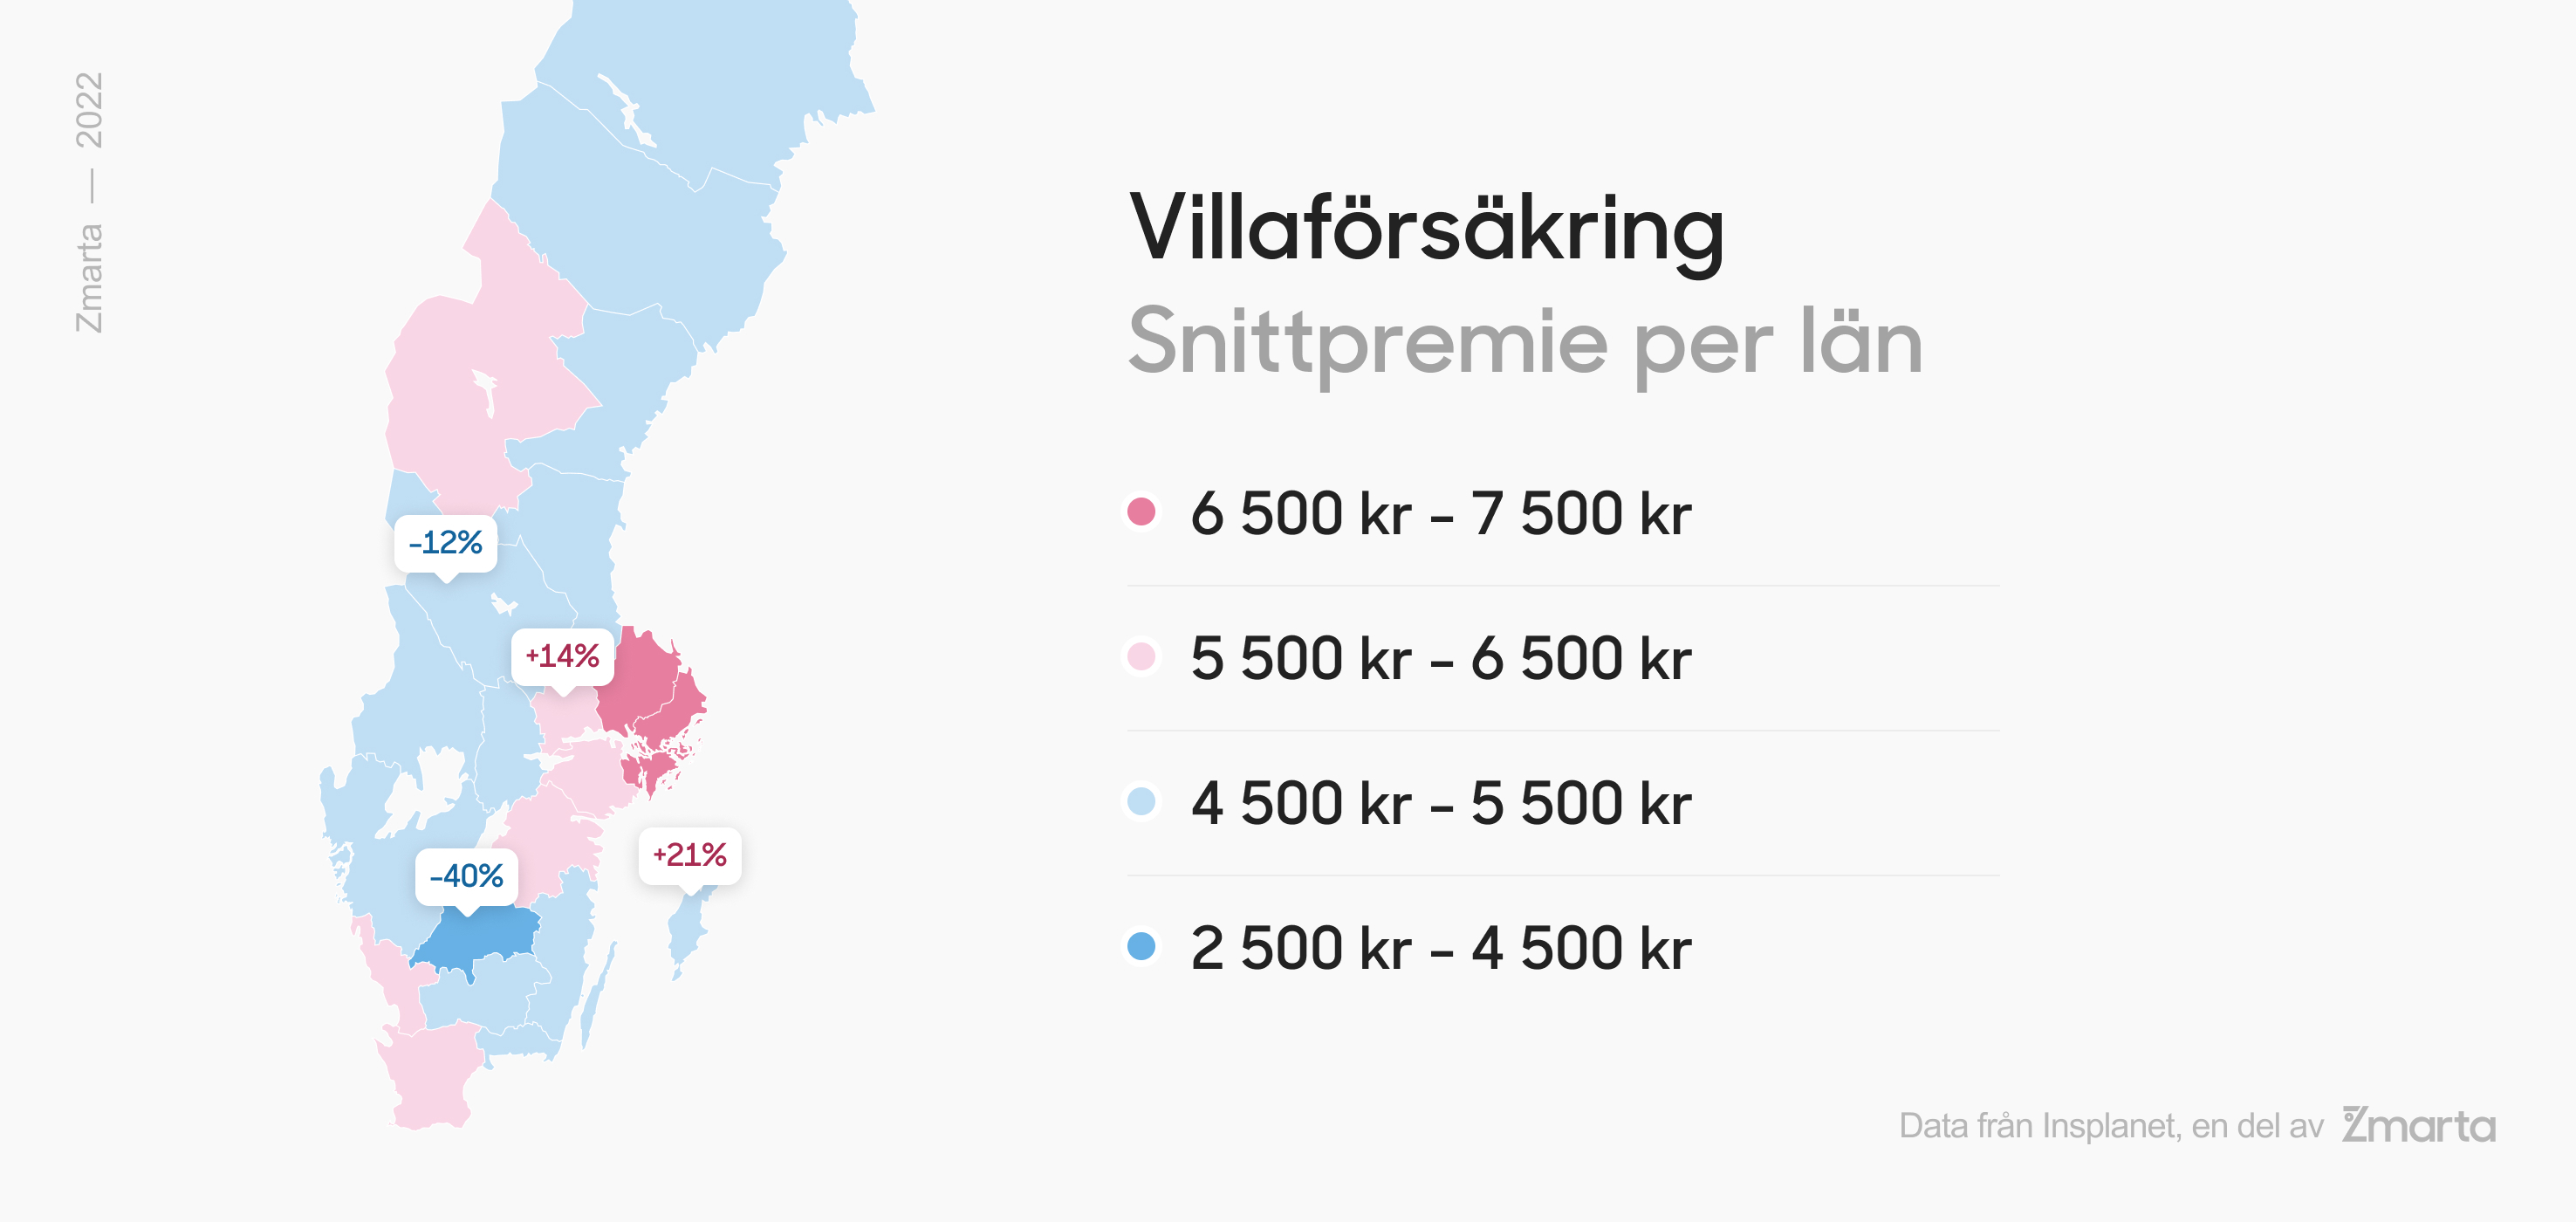 Sverigekarta som visar hur mycket villaförsäkringen kostar i respektive län. 